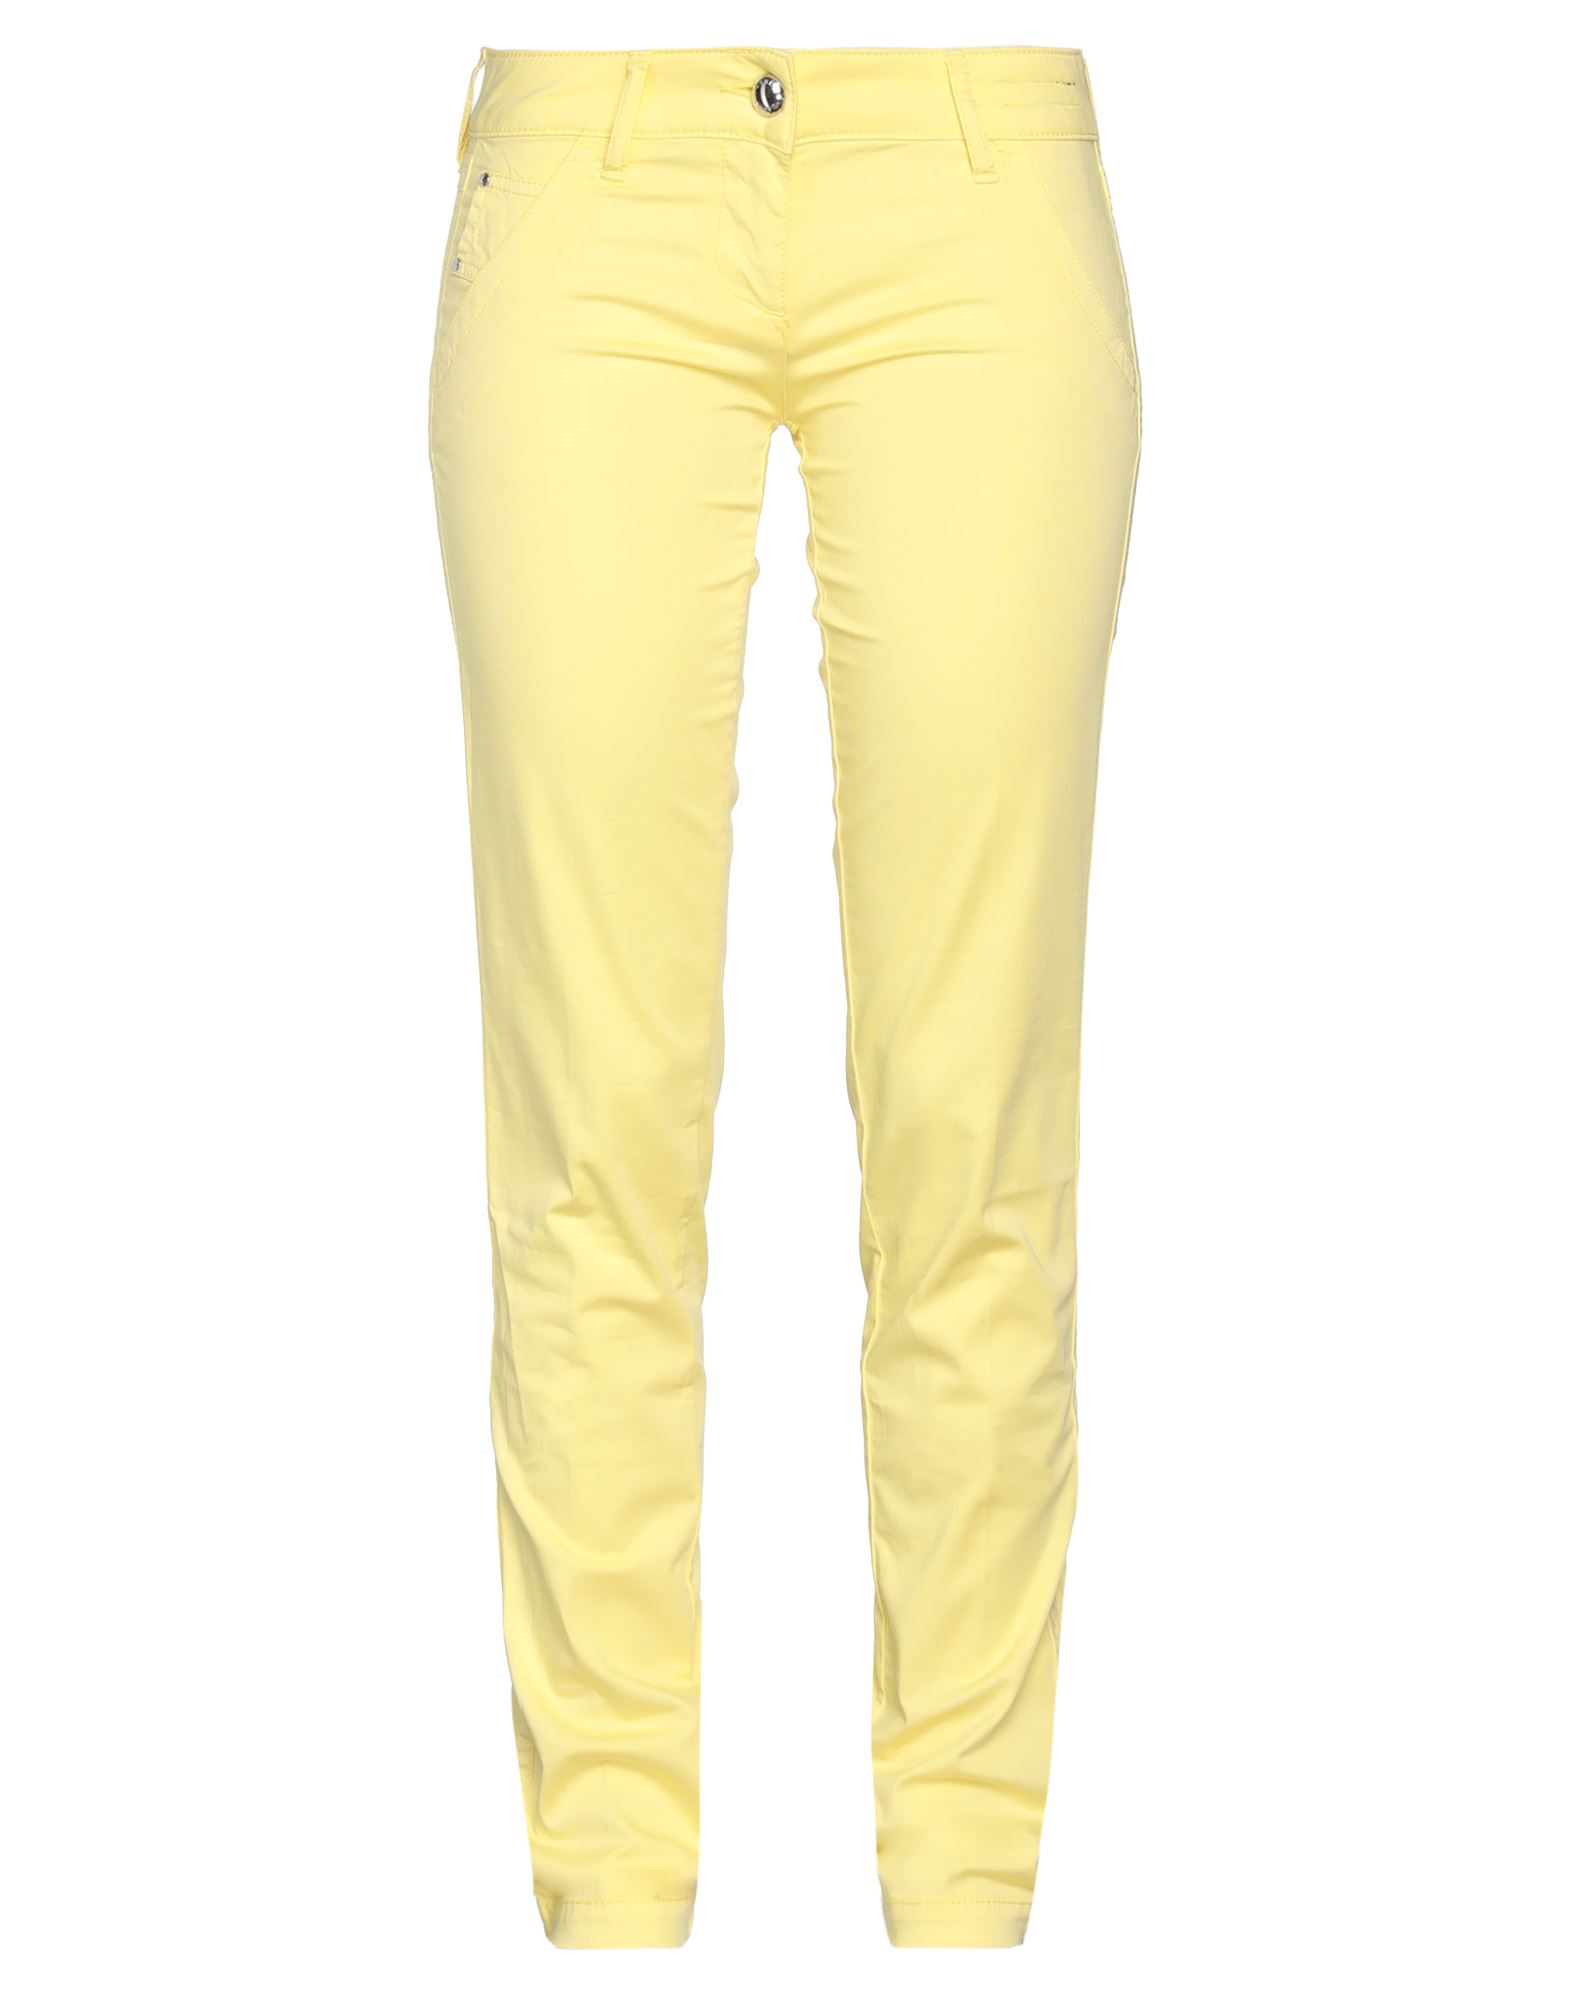 Jacob Cohёn Woman Pants Yellow Size 28 Cotton, Elastane